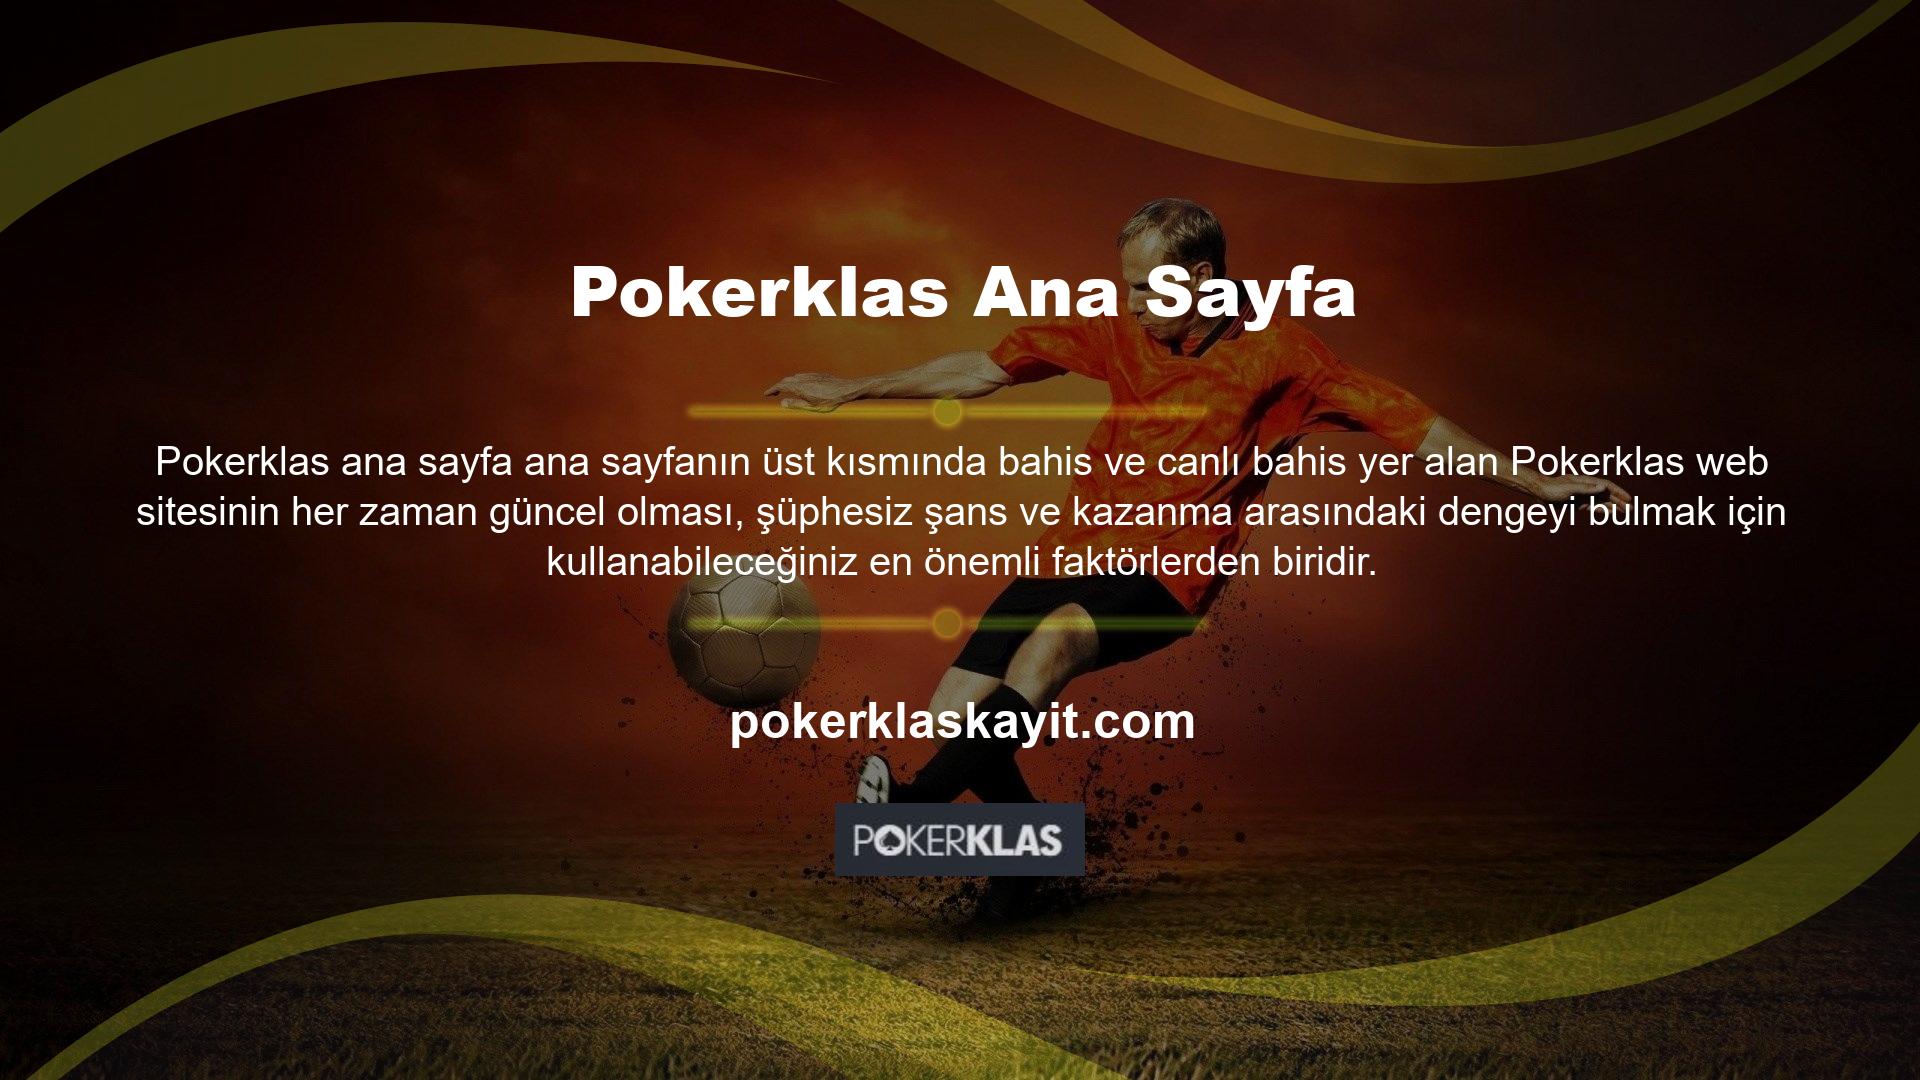 Pokerklas Giriş web sitesinin tasarımı oldukça şık olup tüm üyelerin web sitesi hakkında daha fazla bilgi edinmesini ve kişiselleştirmesini kolaylaştırmaktadır